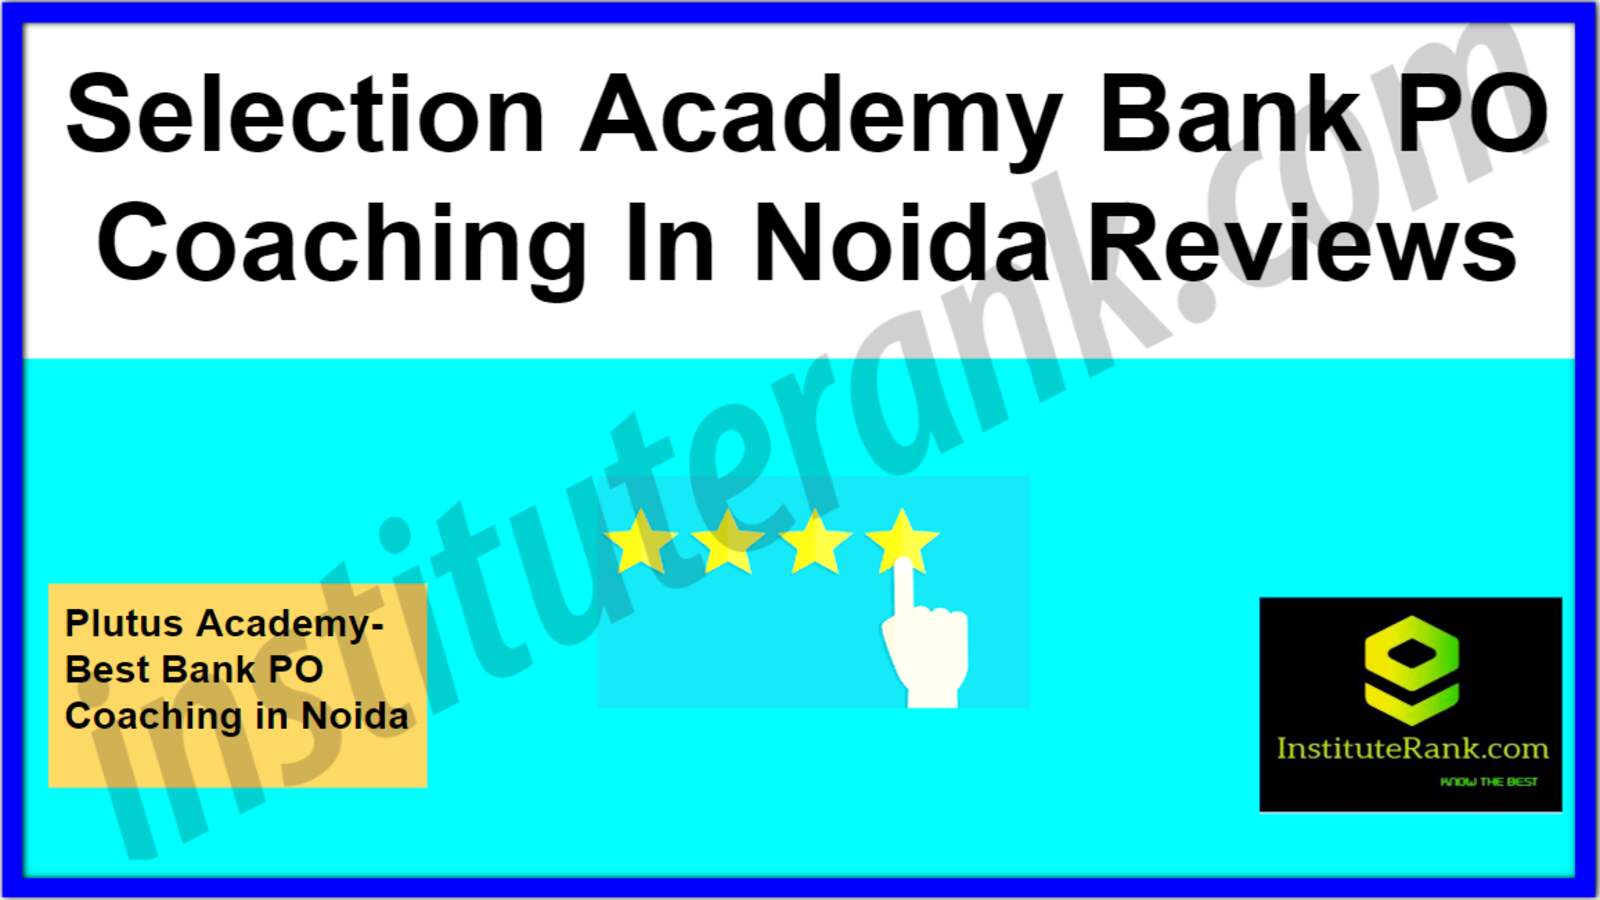 Bank PO Coaching in Noida